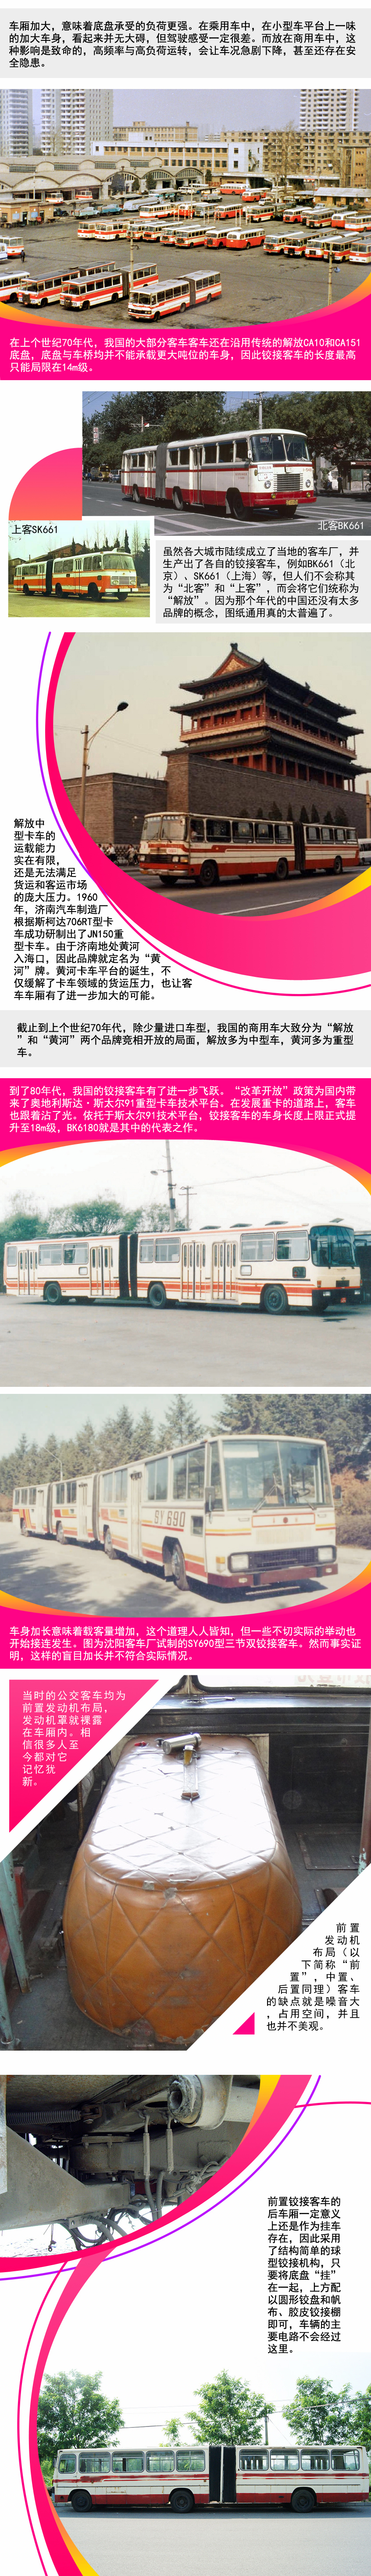 新中国成立70周年 看铰接公交车的历史